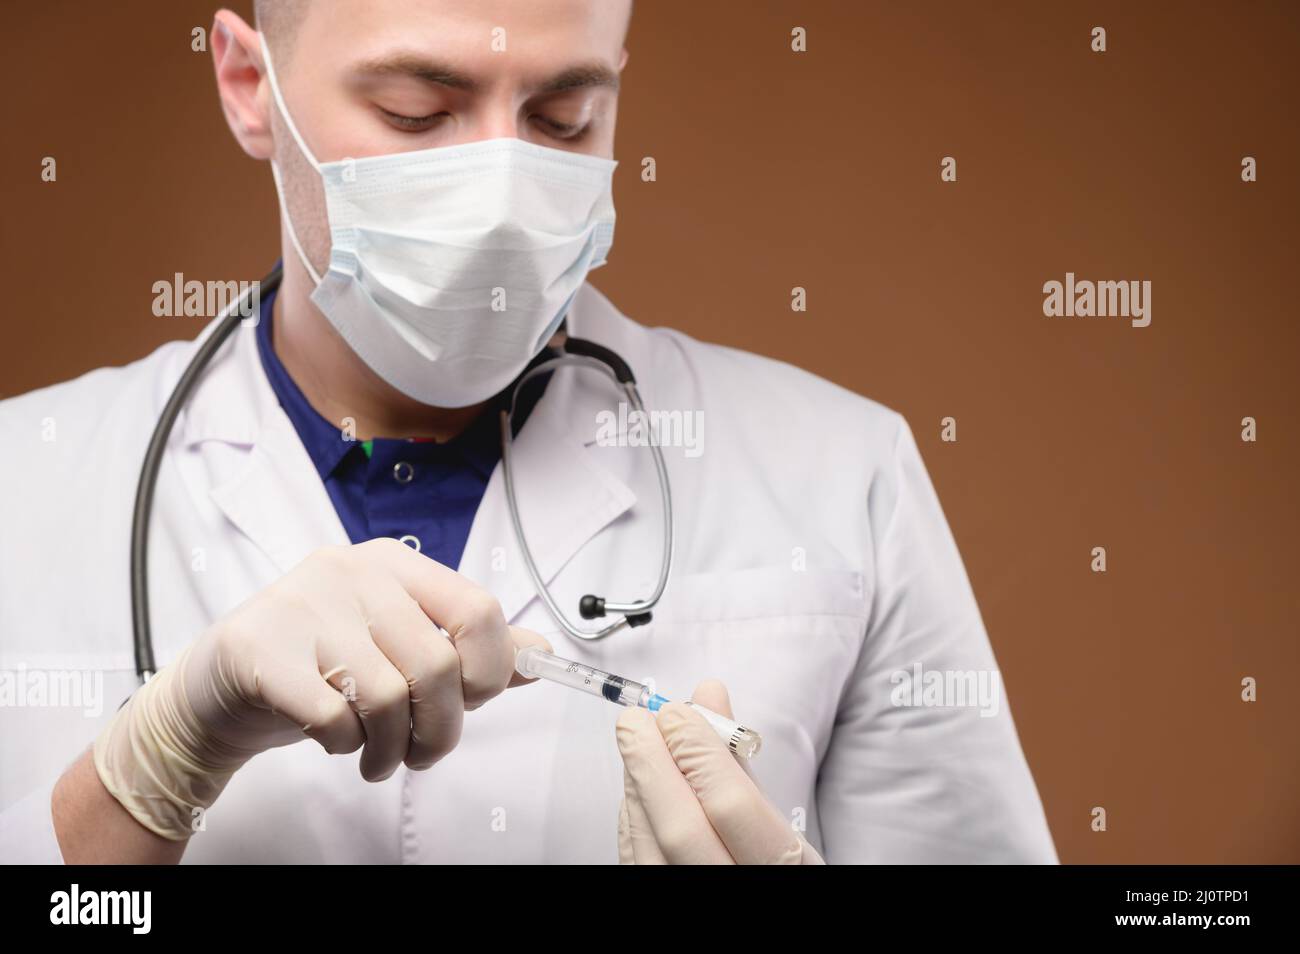 Ein junger weißer kaukasischer Arzt in einem Mantel und einer Maske nimmt einen Impfstoff aus einer Ampulle in eine Spritze. Konzentrieren Sie sich auf die Spritze Stockfoto